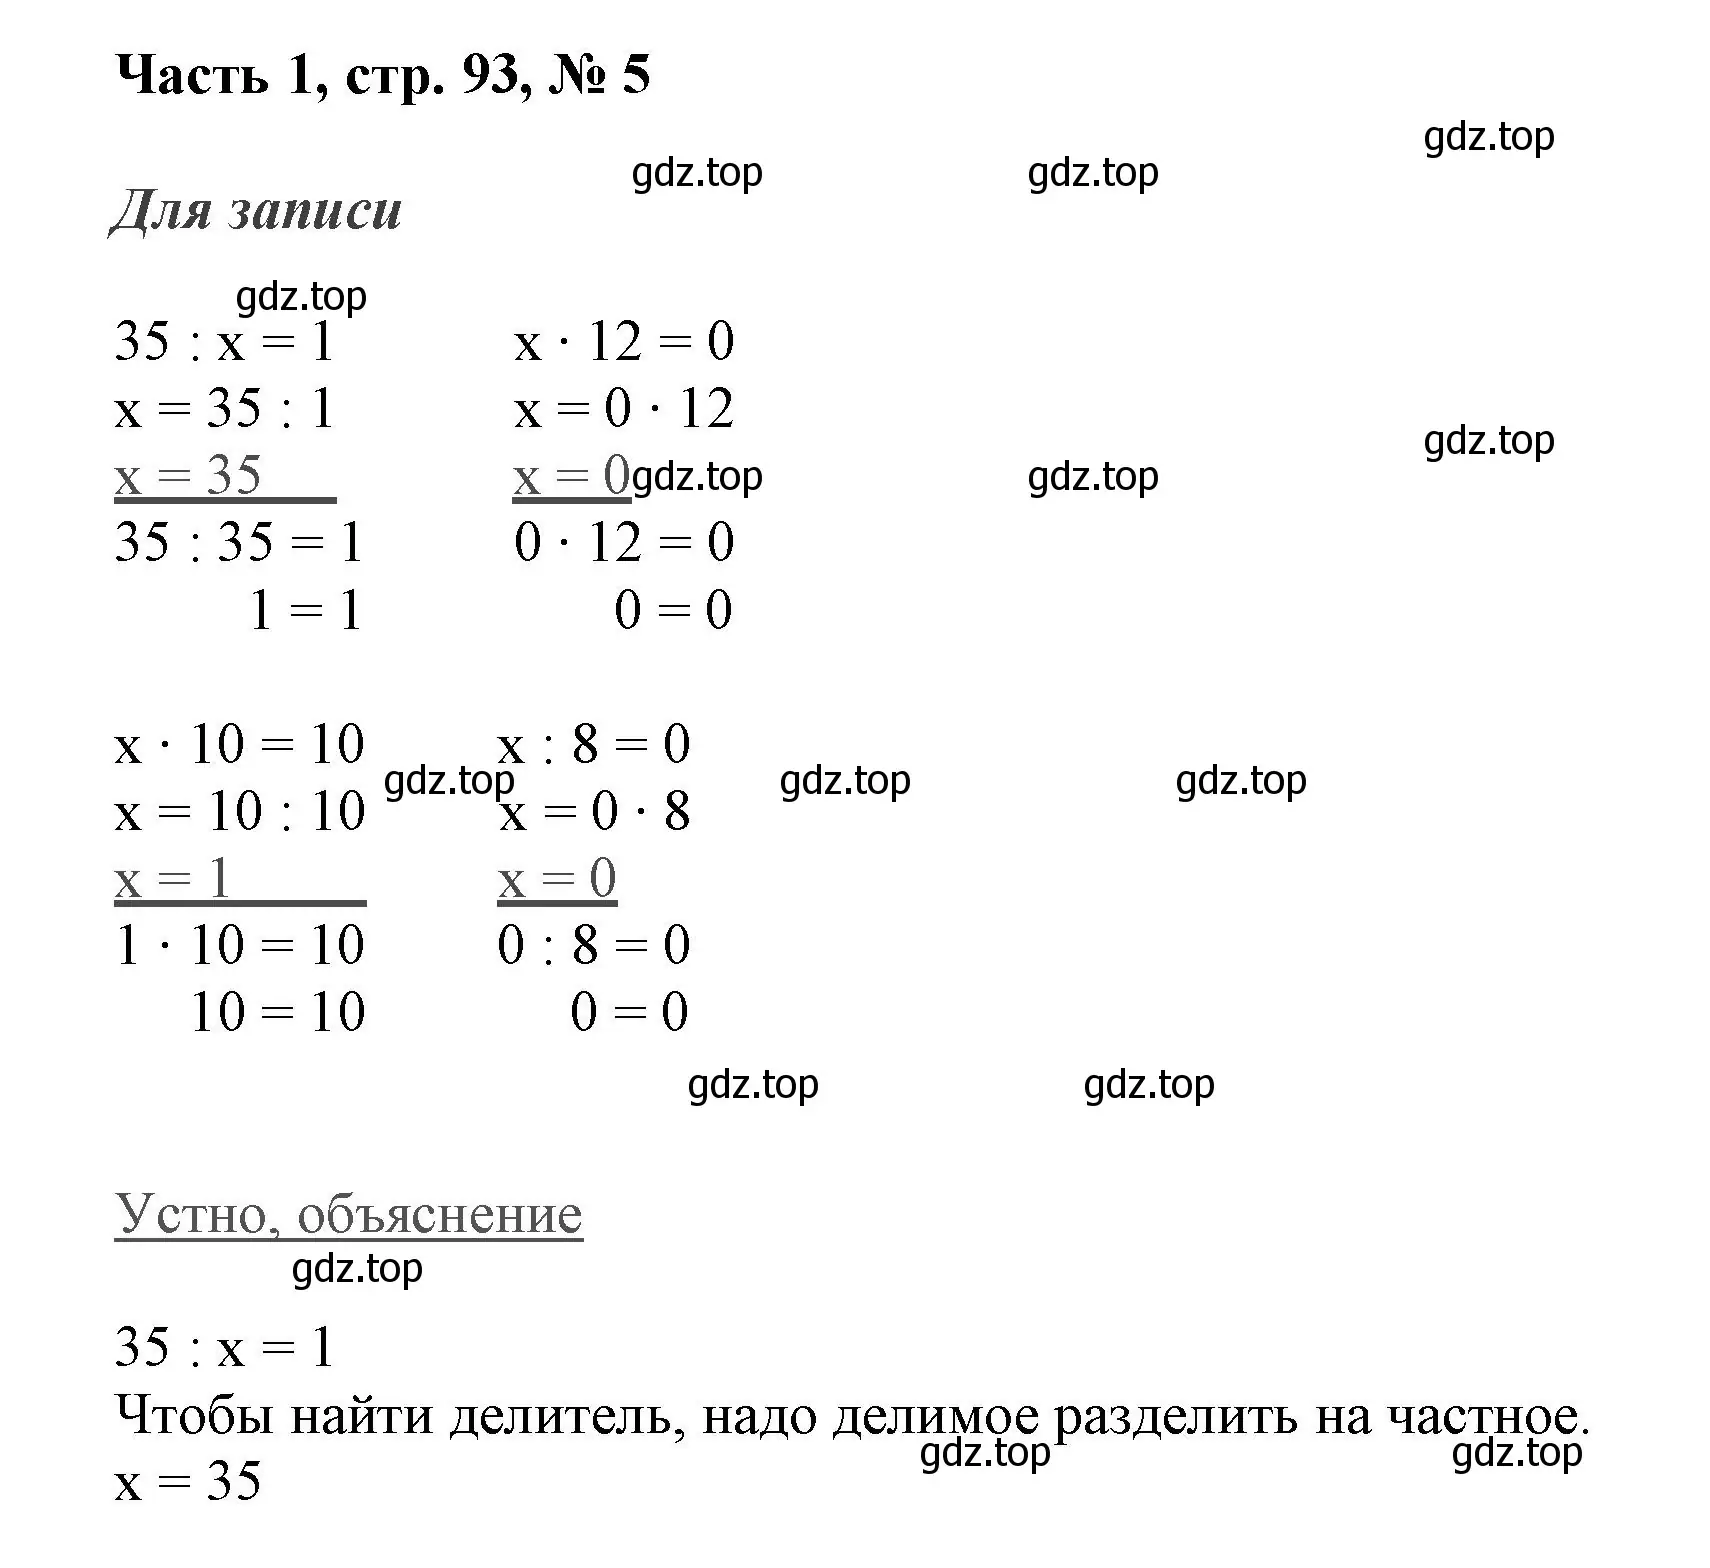 Решение номер 5 (страница 93) гдз по математике 3 класс Моро, Бантова, учебник 1 часть